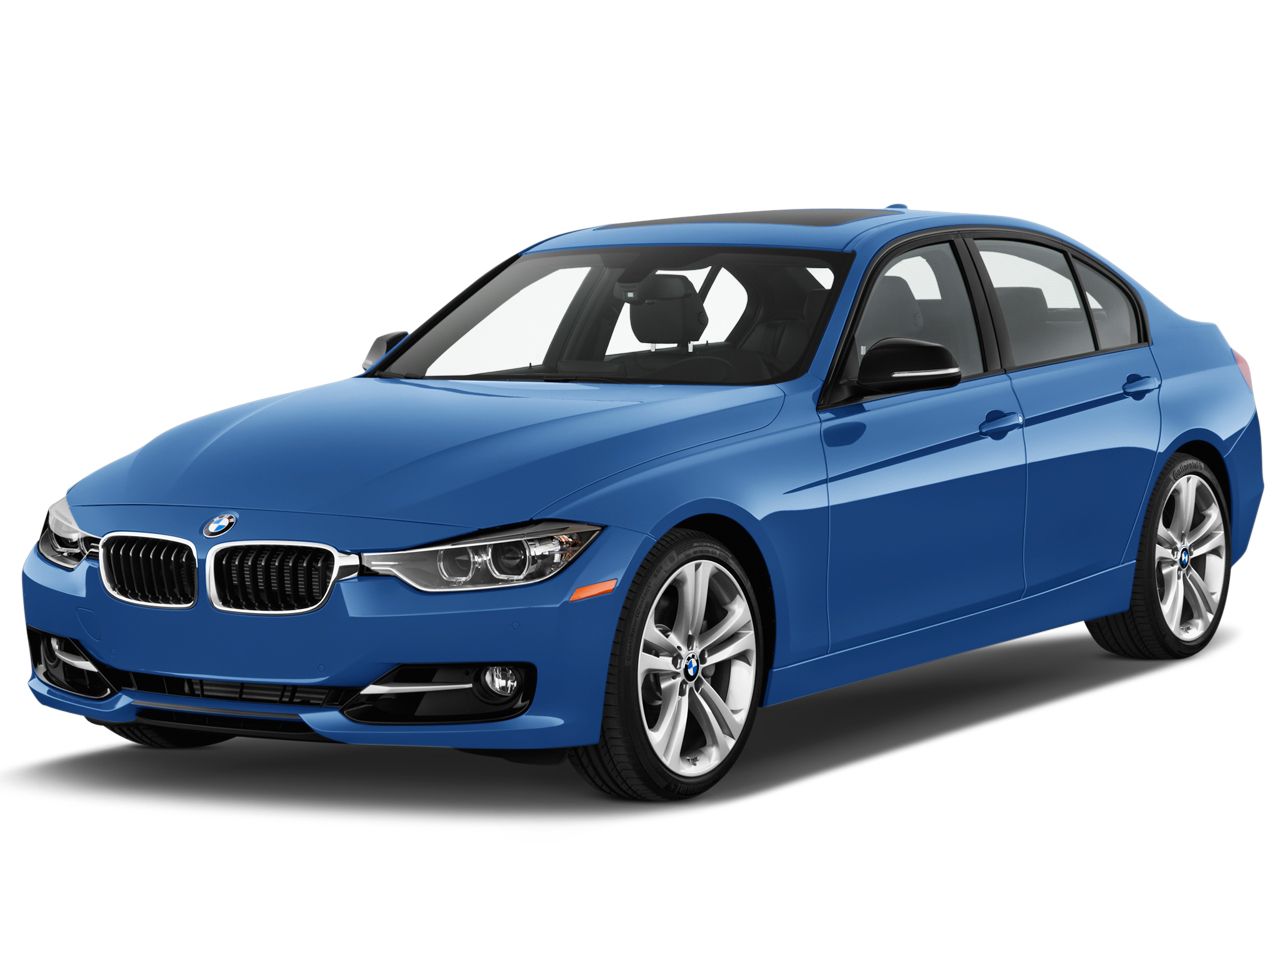 BMW PNG image, free download    图片编号:1700